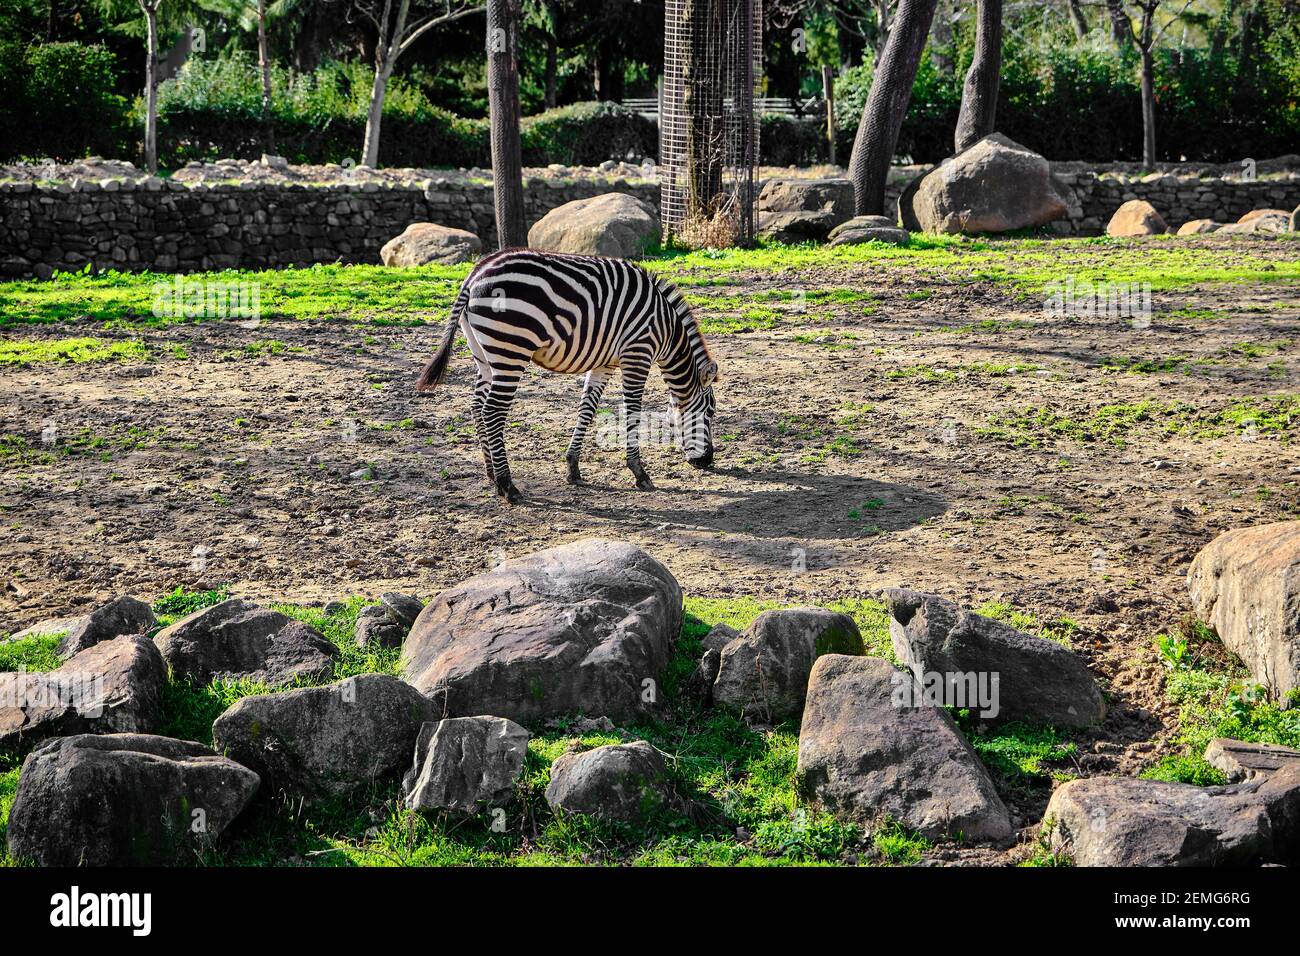 Zèbre à motif simple, noir et blanc sur l'herbe verte lors de l'alimentation sous une journée ensoleillée dans un parc zoologique. Banque D'Images